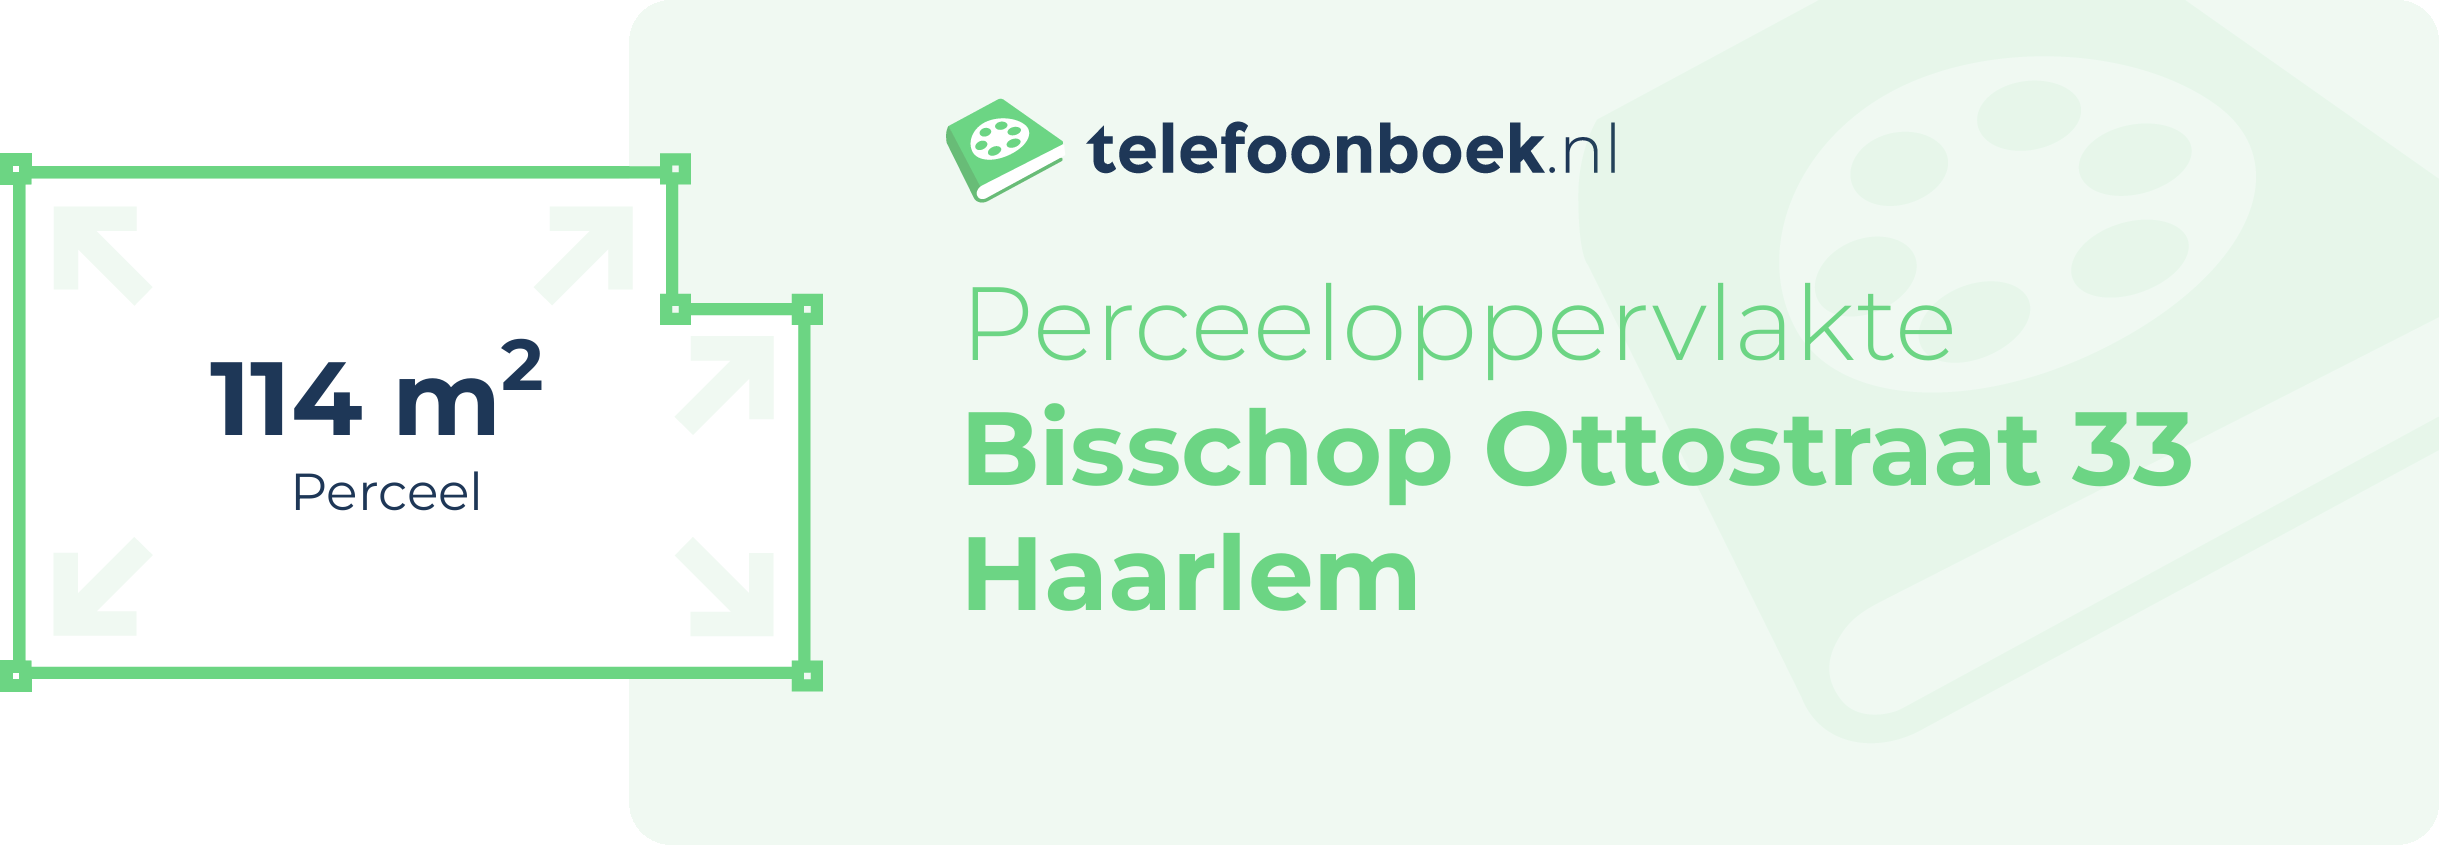 Perceeloppervlakte Bisschop Ottostraat 33 Haarlem